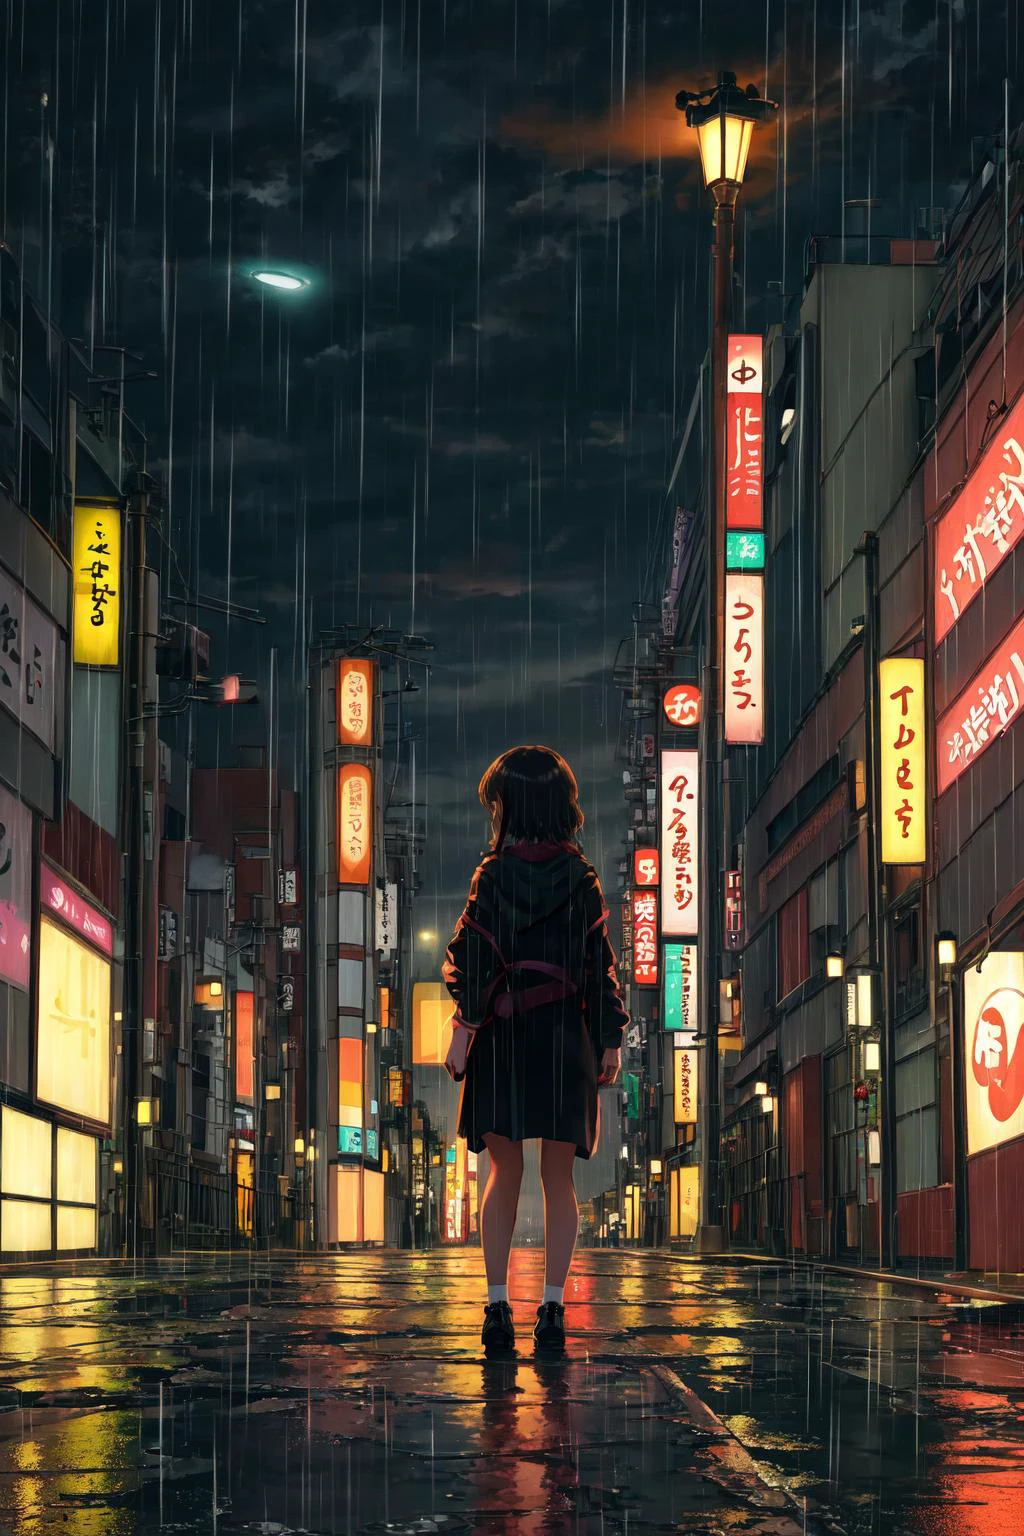 傑作,最高品質,1人の女の子,一人で,視聴者を見る,深夜, 東京, 寂れた通り, 遠景, 背景, 孤独, 雨, 街灯, 弱い光,